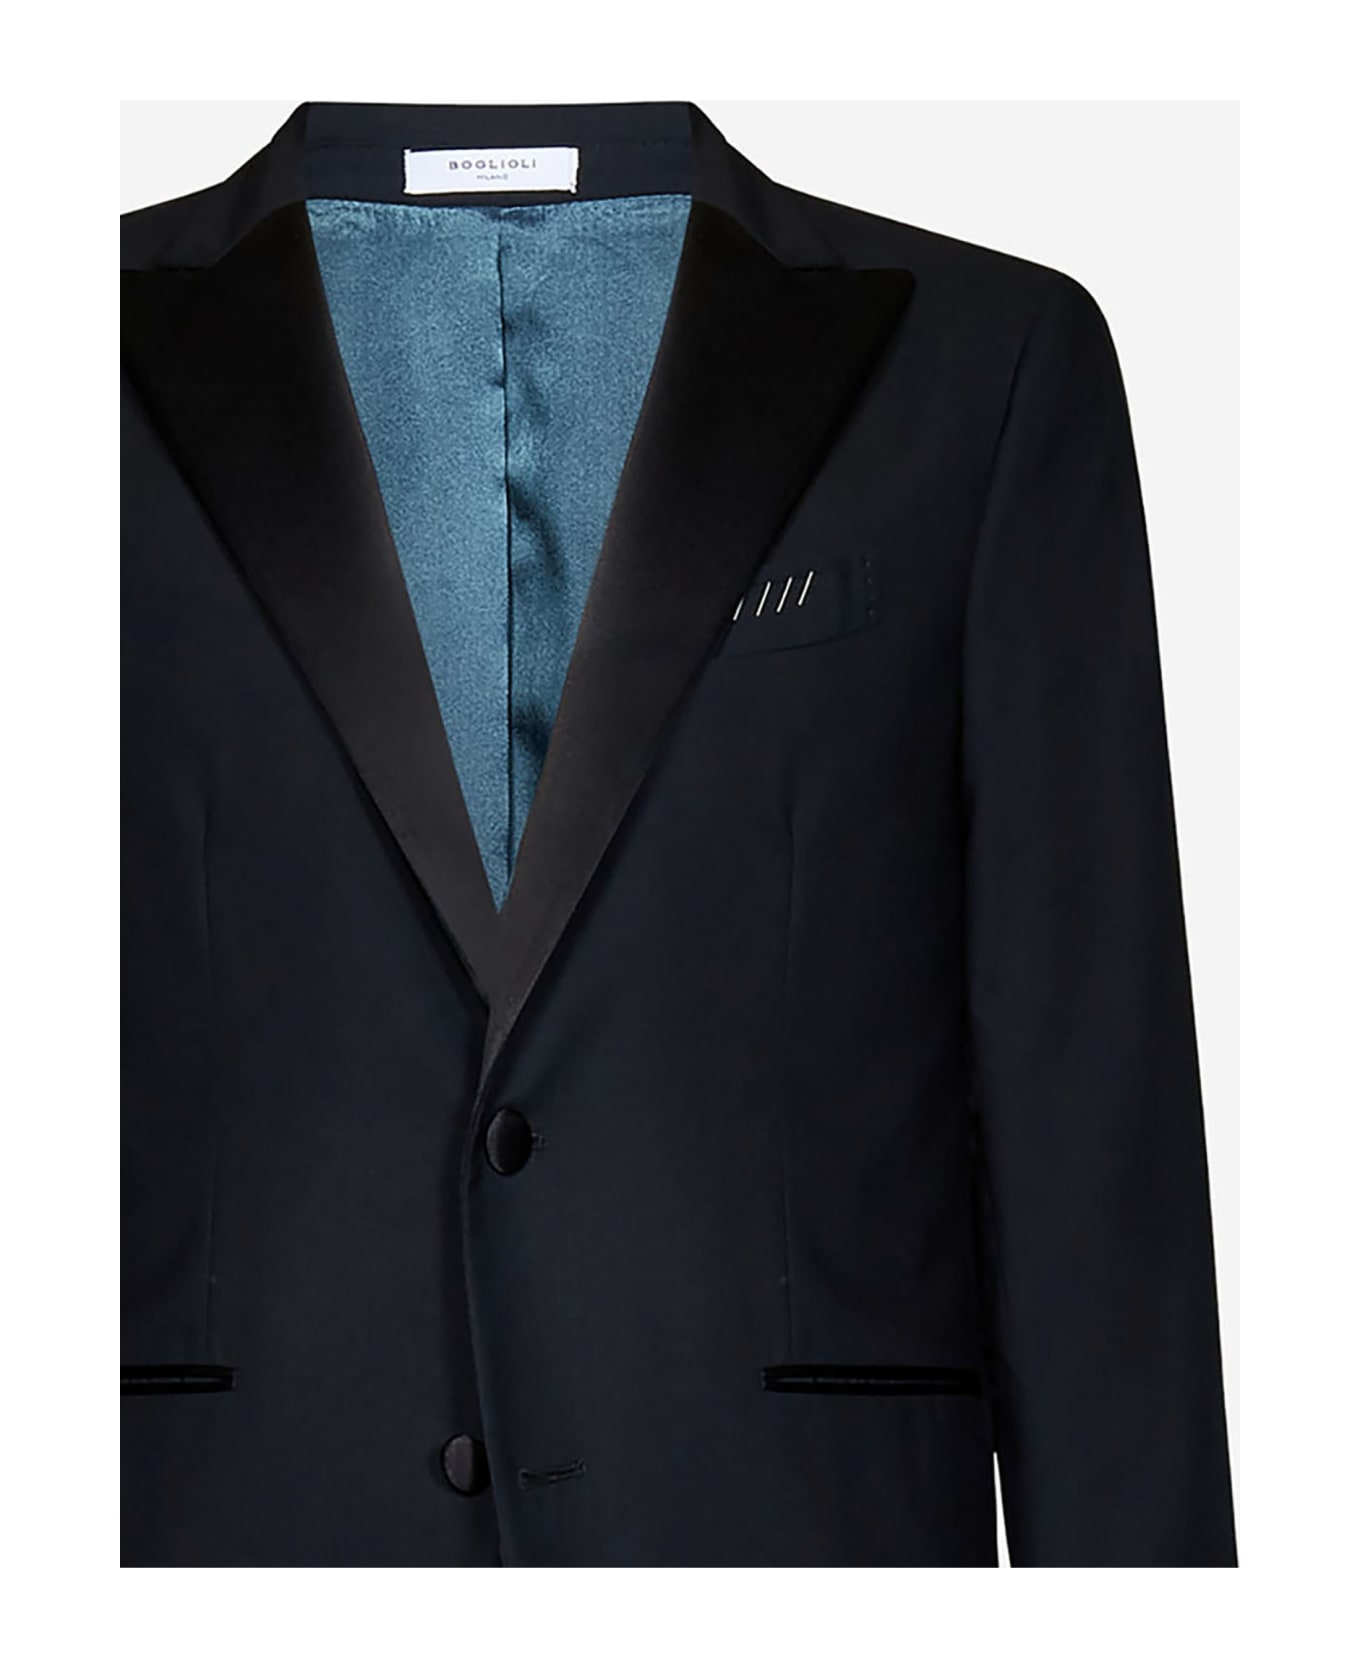 Boglioli Suit - Black スーツ